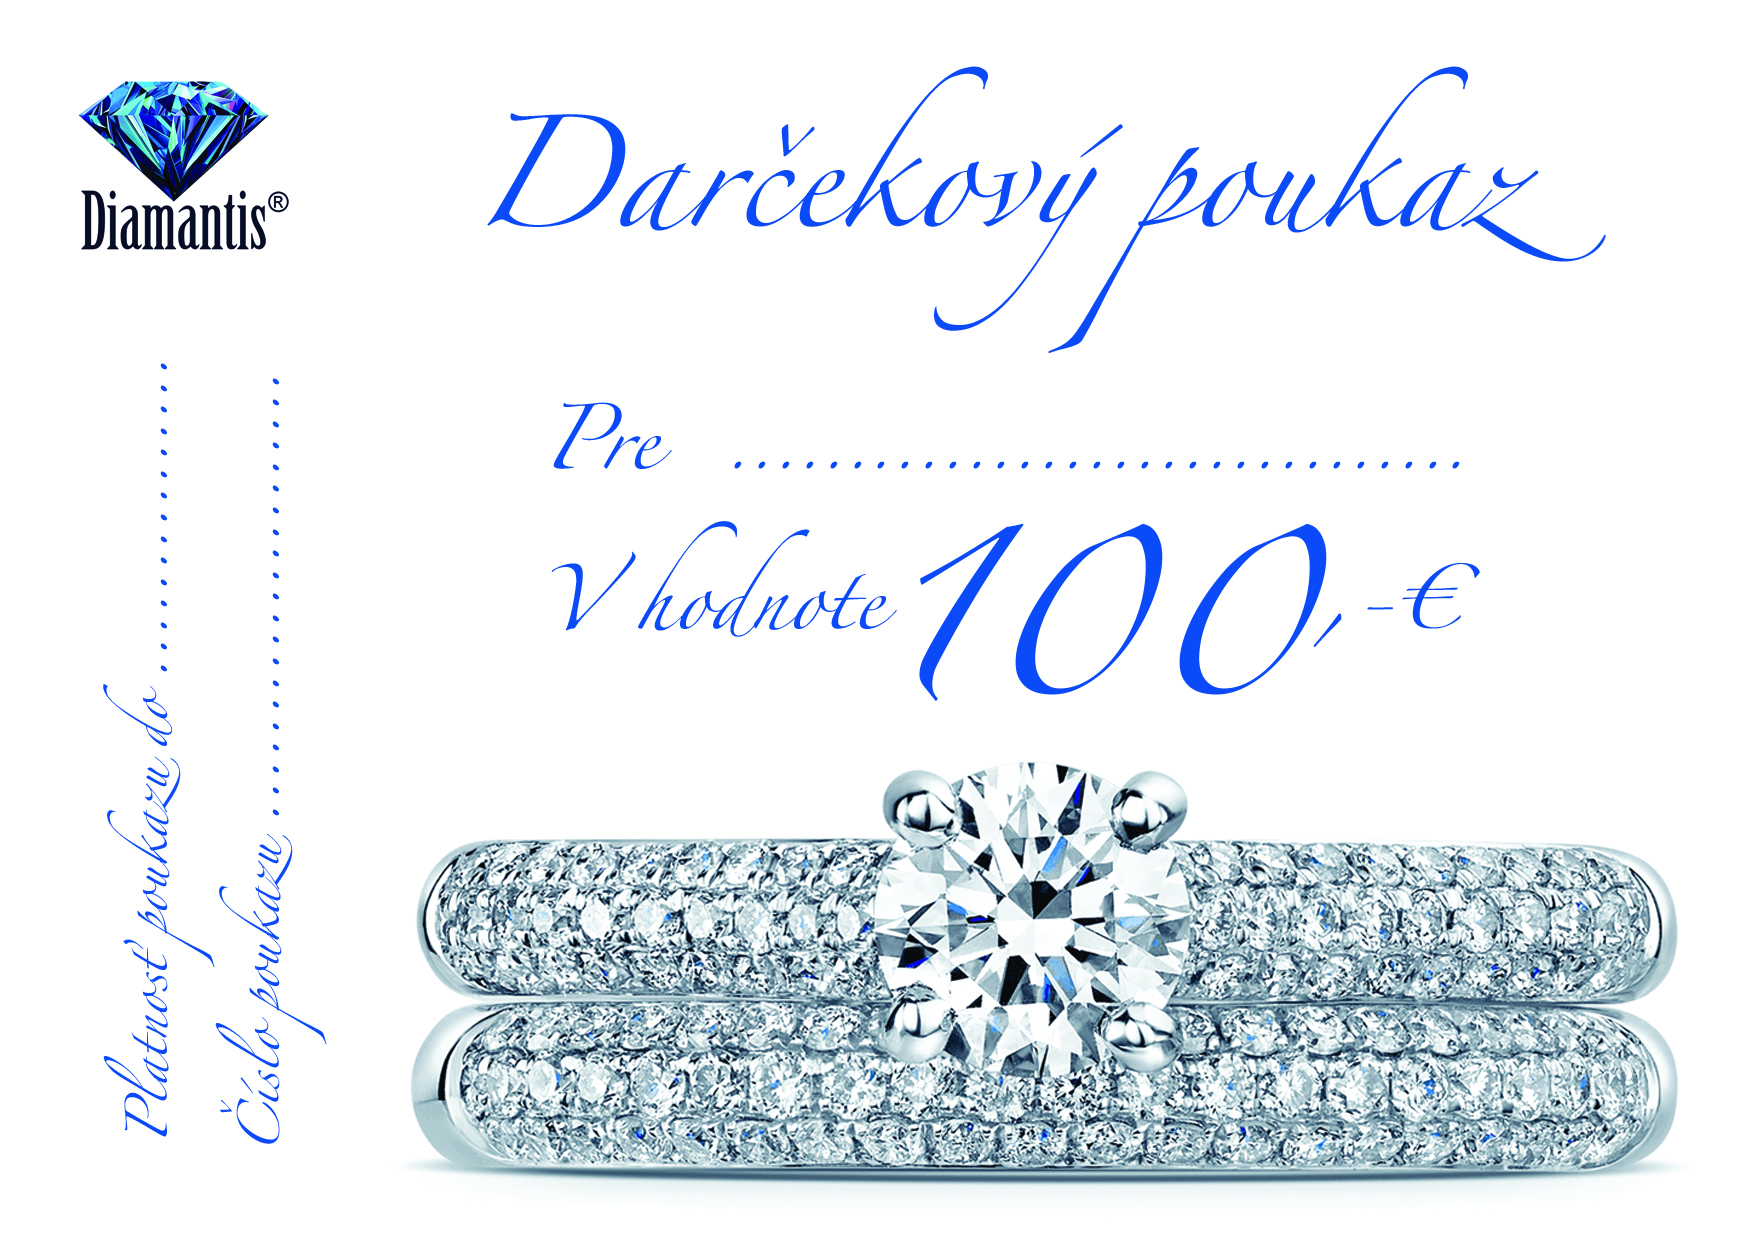 Darčekový poukaz 100,-€ Diamantis 